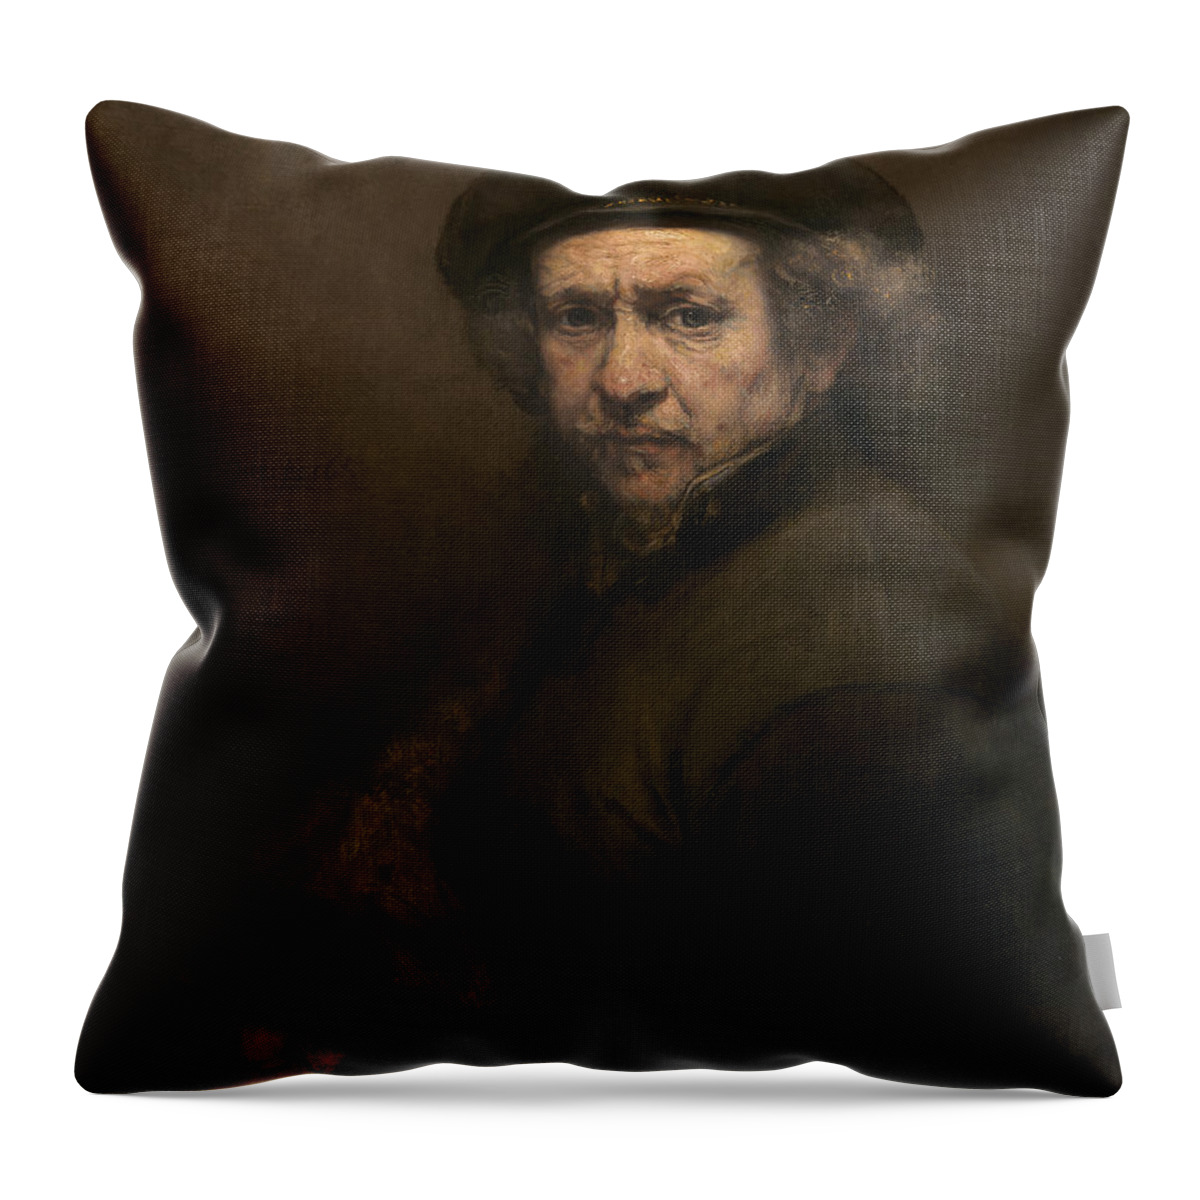 Rembrandt Van Rijn Throw Pillow featuring the painting Self Portrait #7 by Rembrandt van Rijn